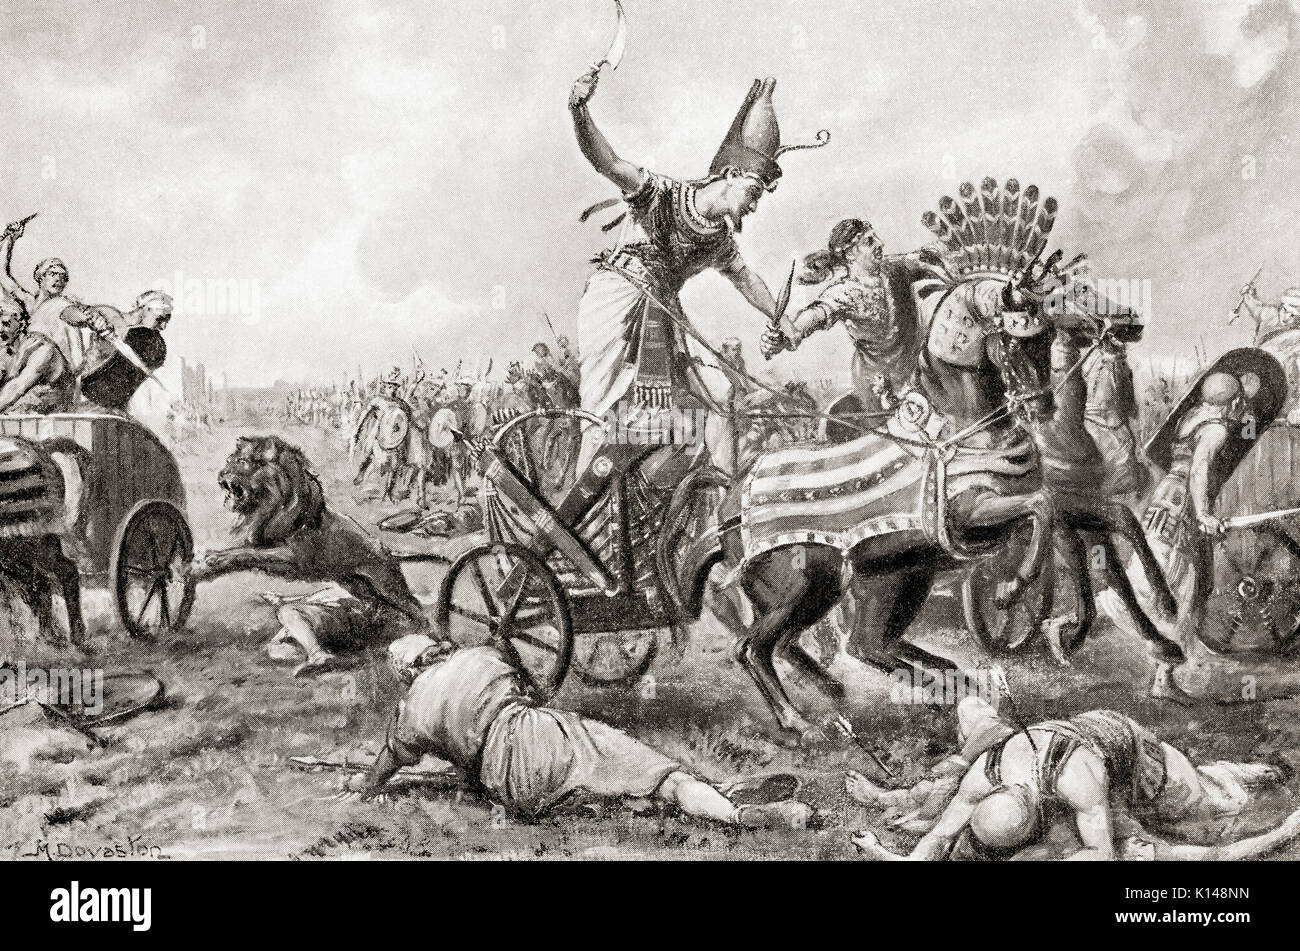 La bataille de Kadesh, ou bataille de Qadesh entre les forces de l'Empire égyptien sous Ramsès II et l'Empire hittite sous Muwatalli II, ch. 1257 BC. Après la peinture de Margaret Dovaston (1884-1954). L'histoire de Hutchinson de l'ONU, publié en 1915. Banque D'Images